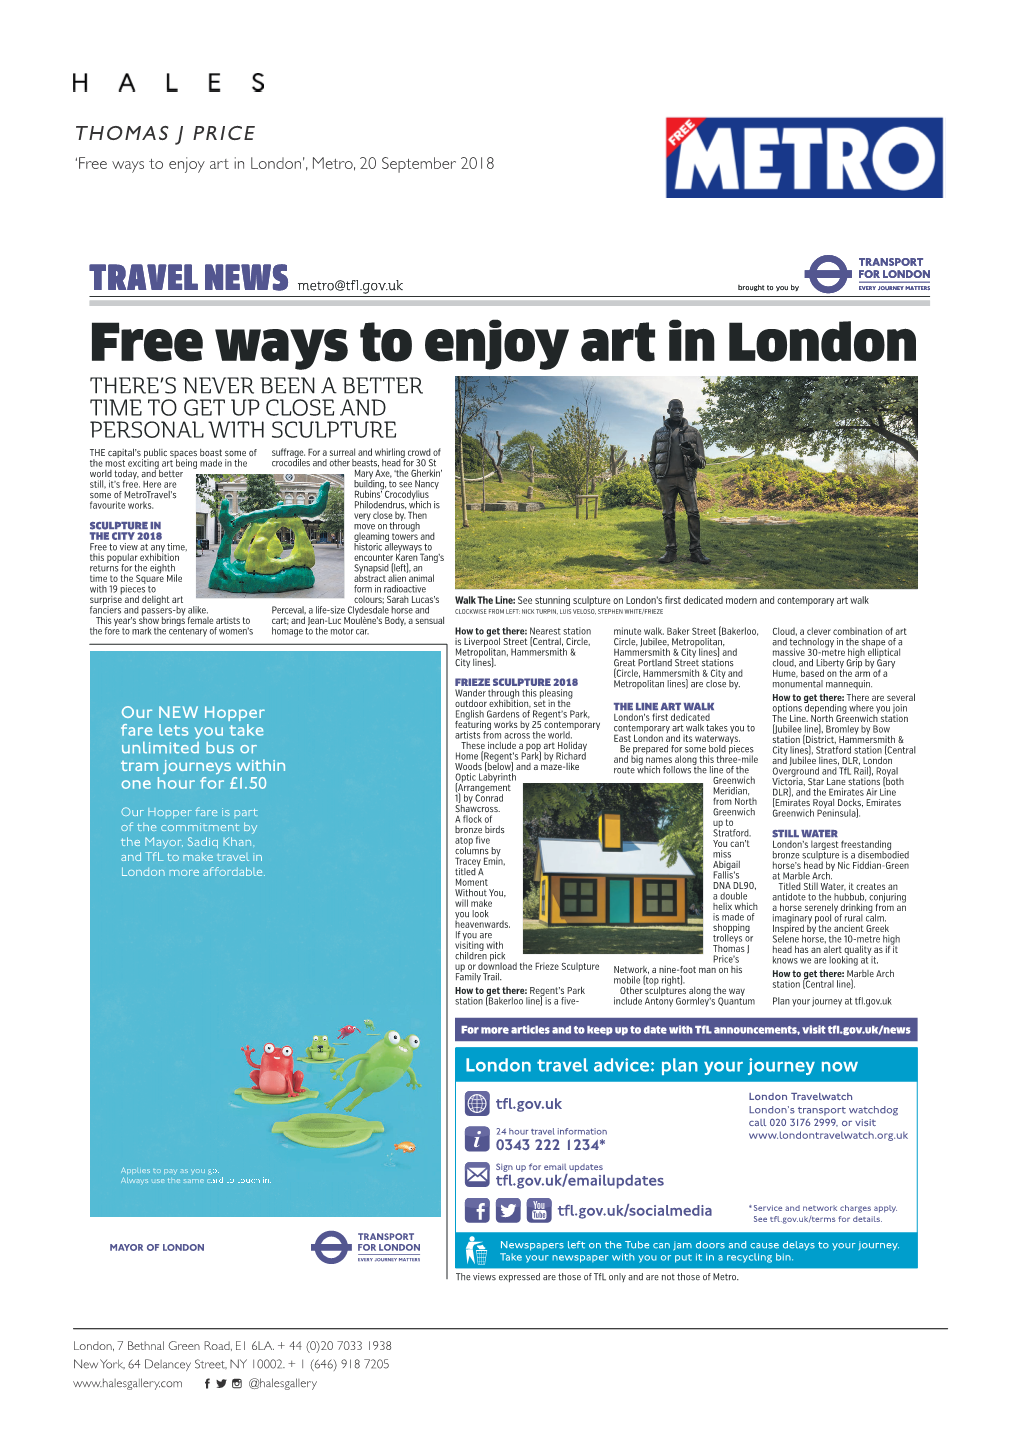 Free Ways to Enjoy Art in London’, Metro, 20 September 2018